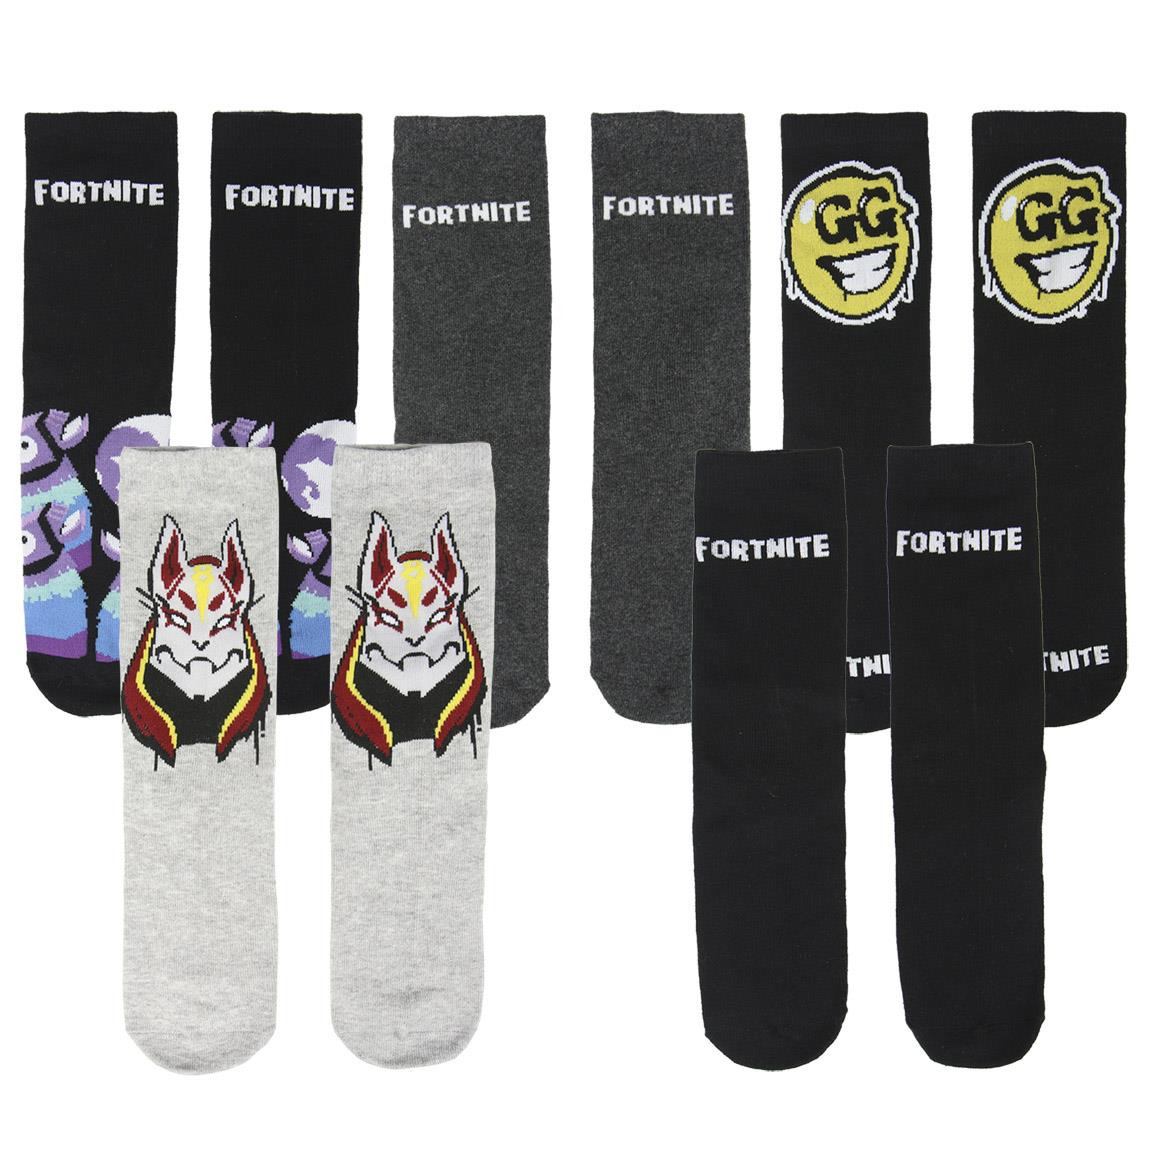 Ponožky Fortnite - Sada